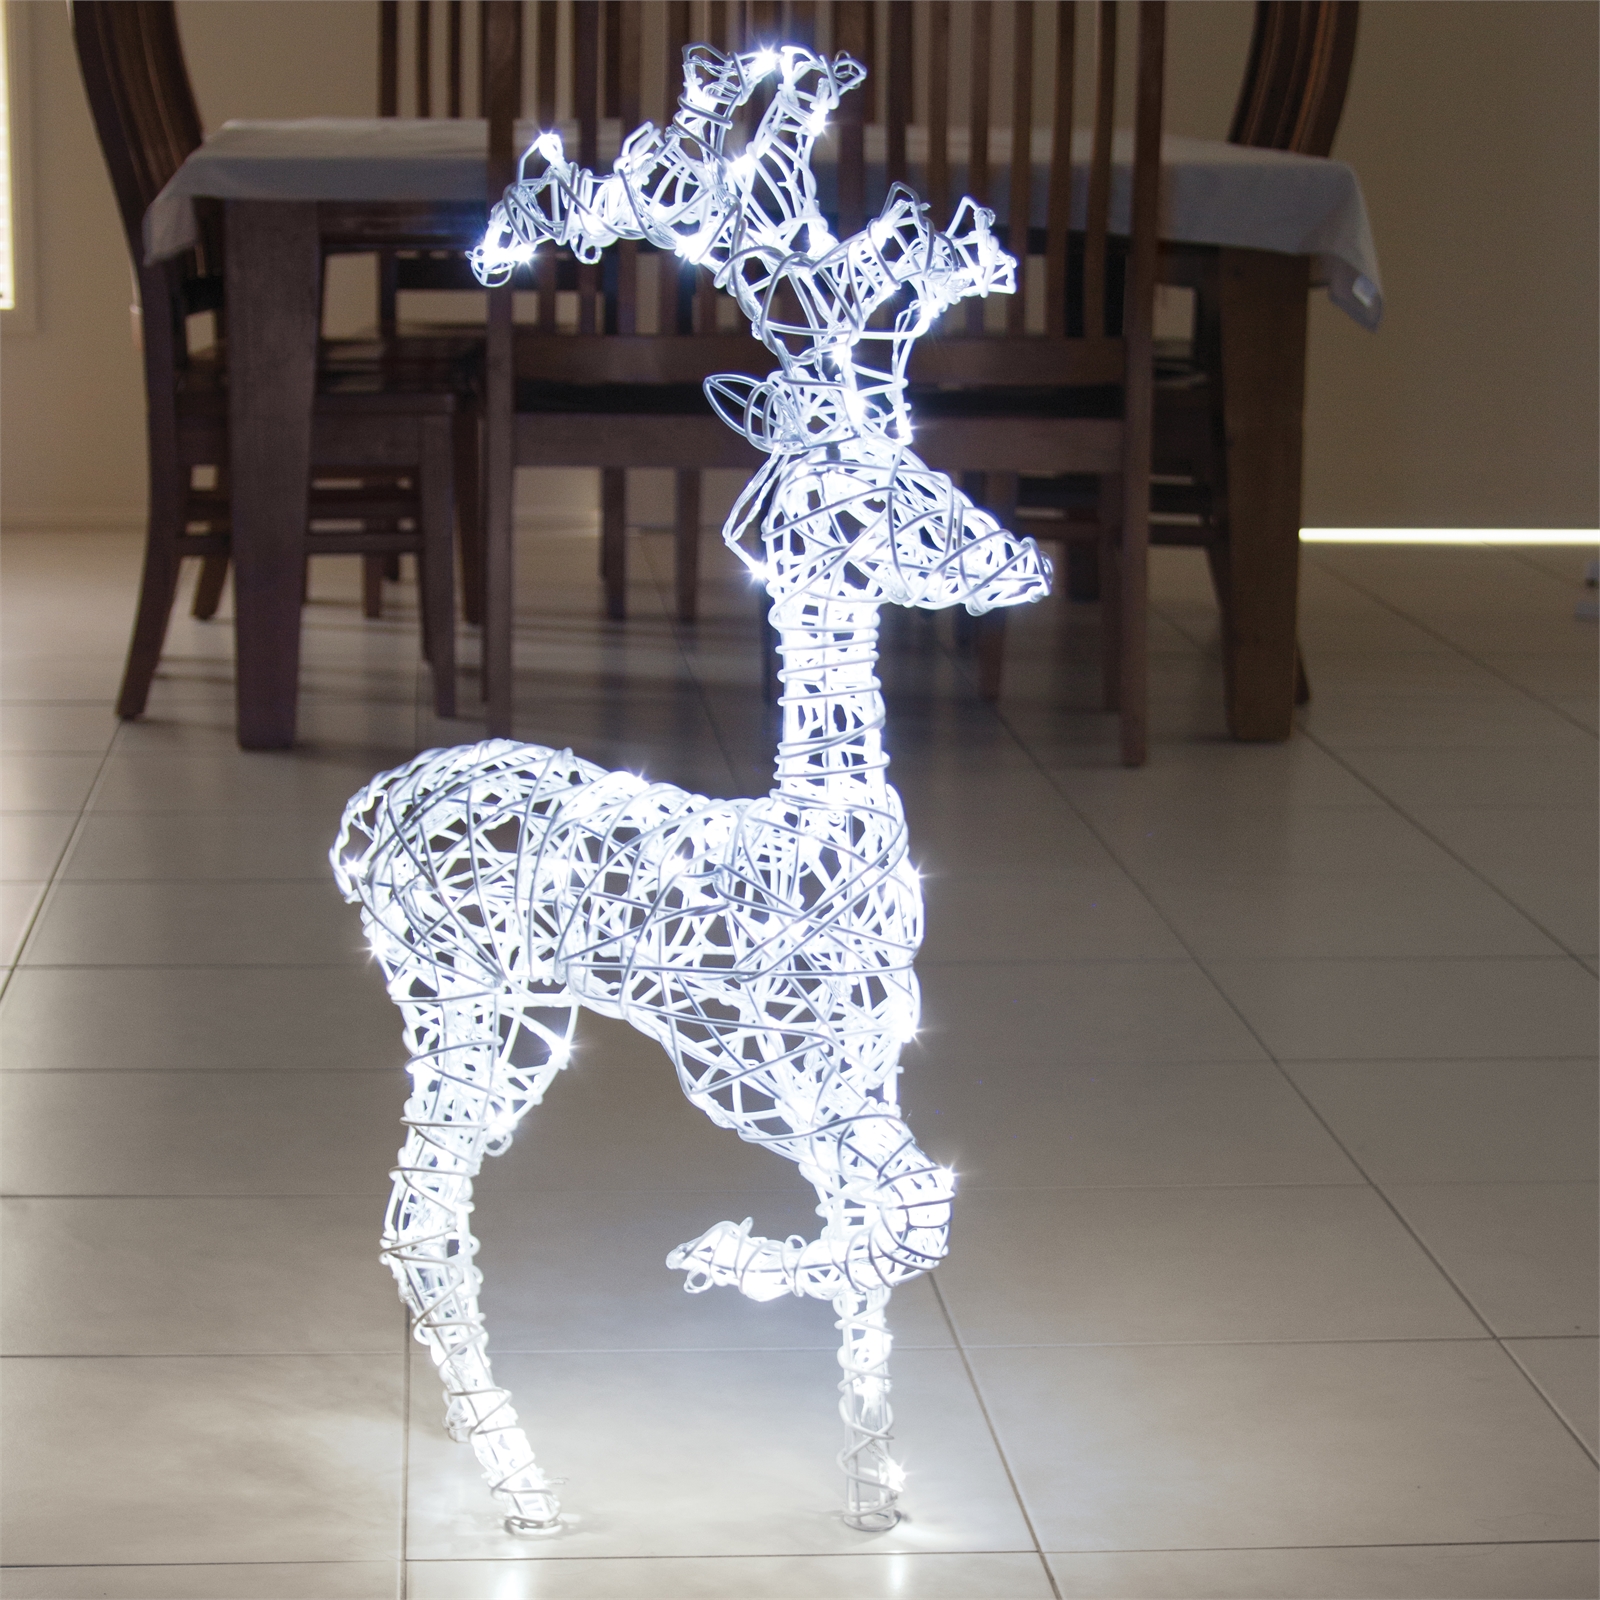 Lytworx 160 LED White Festive Kicking Reindeer Light Statue